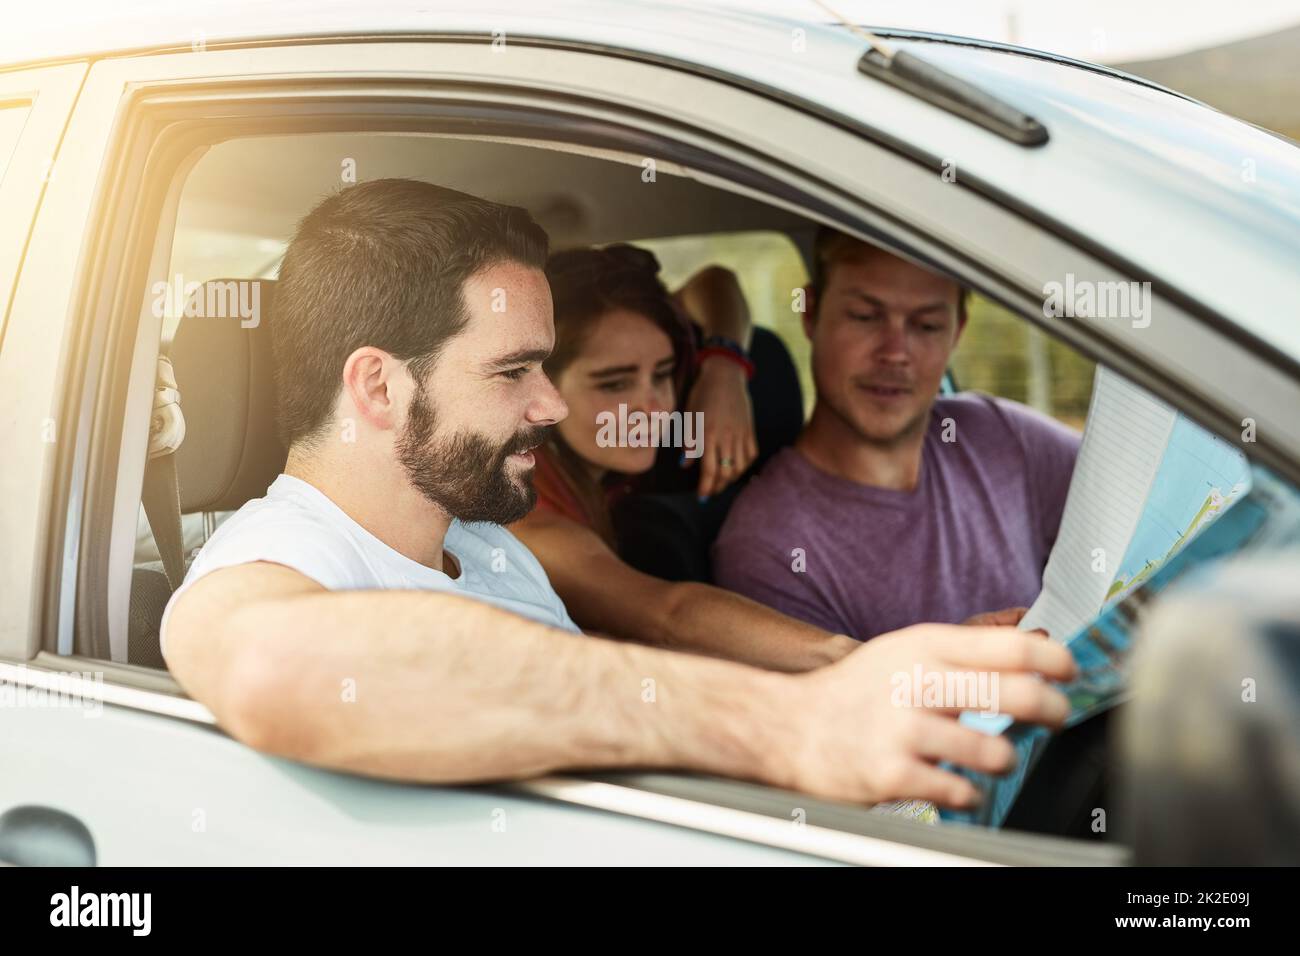 Alle Systeme gehen. Aufnahme einer Gruppe junger Freunde, die sich bereit machen, mit ihrem Fahrzeug zu ihrem Ziel zu fahren, während sie sich eine Karte ansehen. Stockfoto